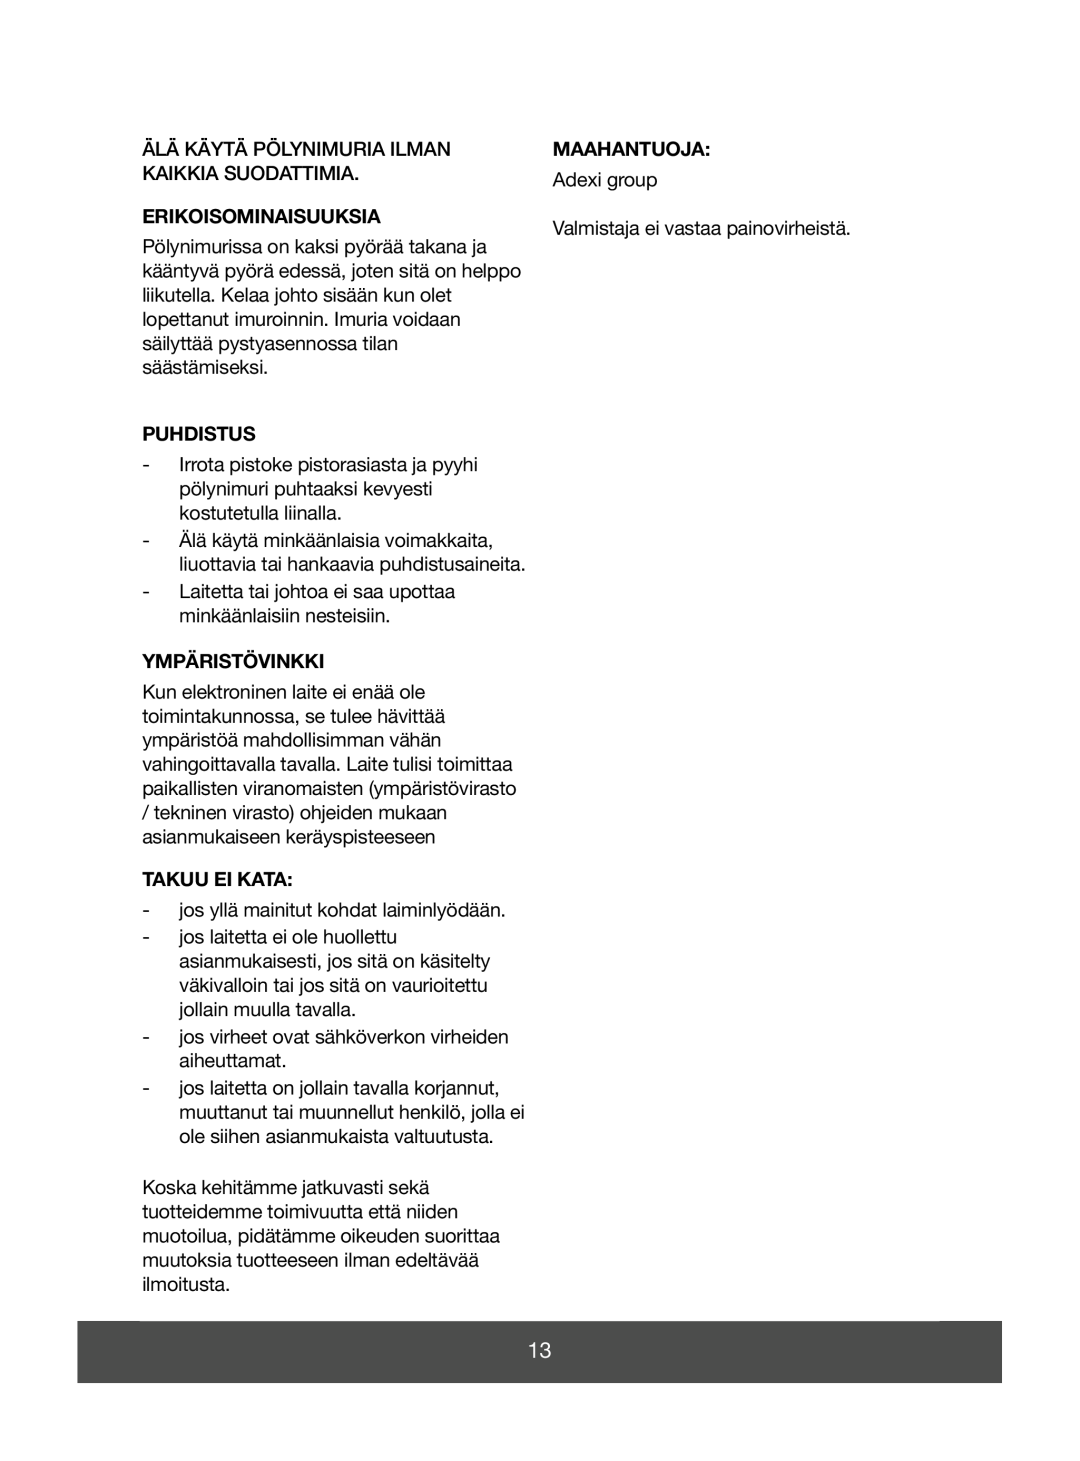 Melissa 640-043 manual Erikoisominaisuuksia, Puhdistus, Ympäristövinkki, Takuu Ei Kata, Maahantuoja 